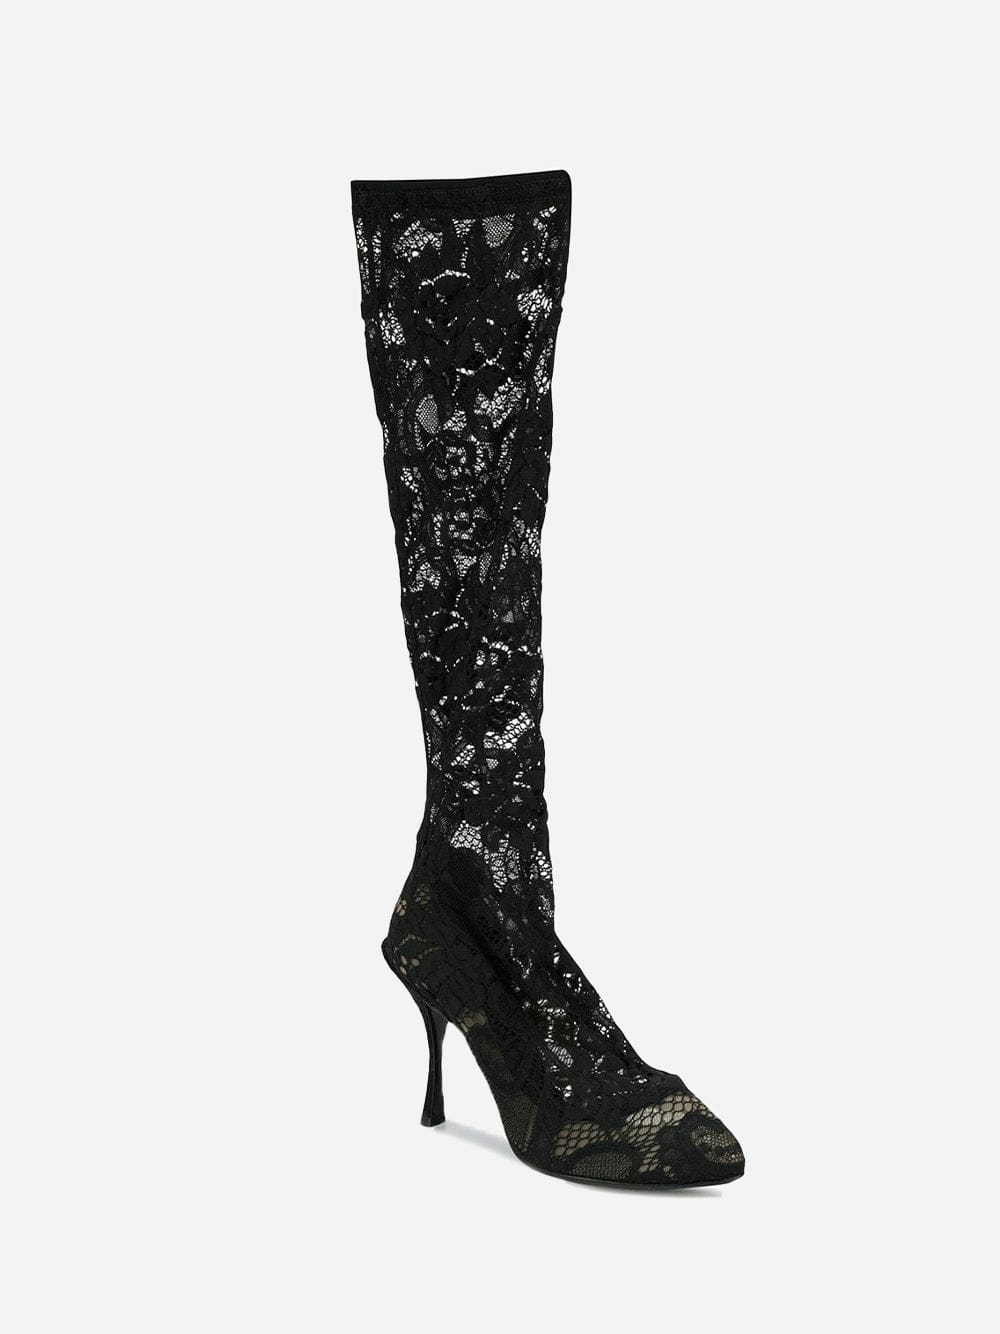 Dolce & Gabbana Sheer Lace Boots